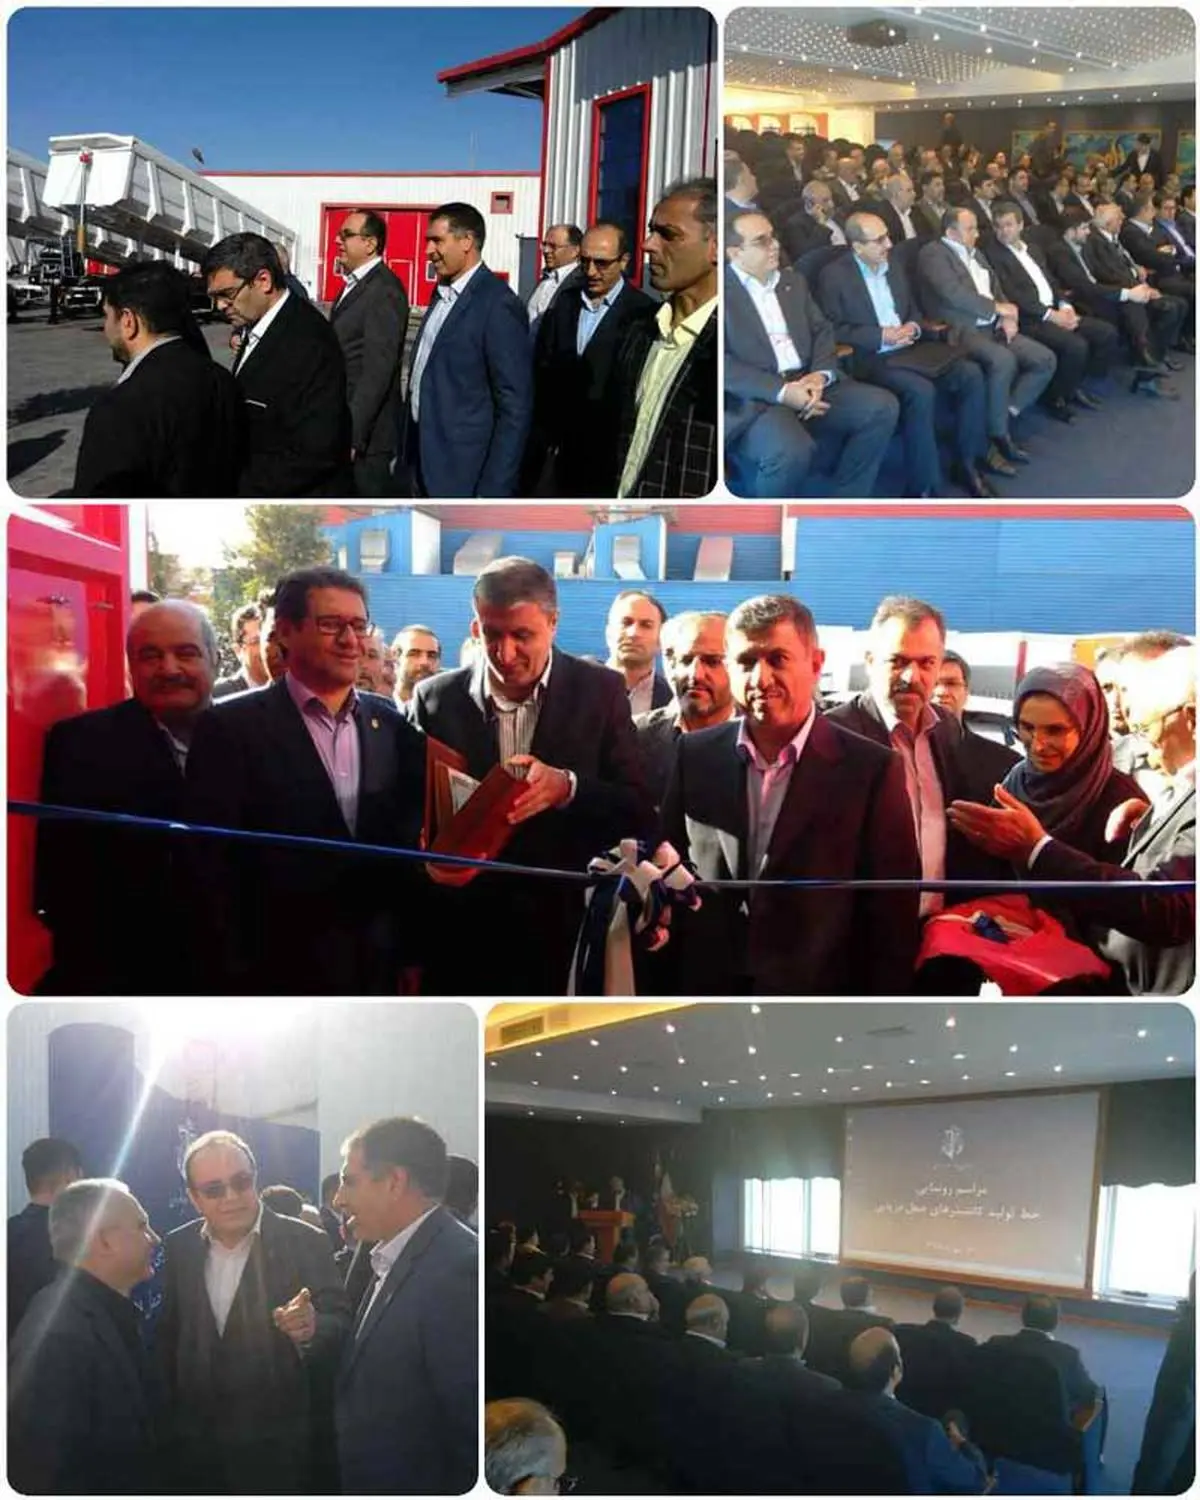 بزرگترین خط تولید کانتینرهای حمل دریایی کشور با مشارکت بانک صادرات ایران در شرکت «ماموت» افتتاح شد

